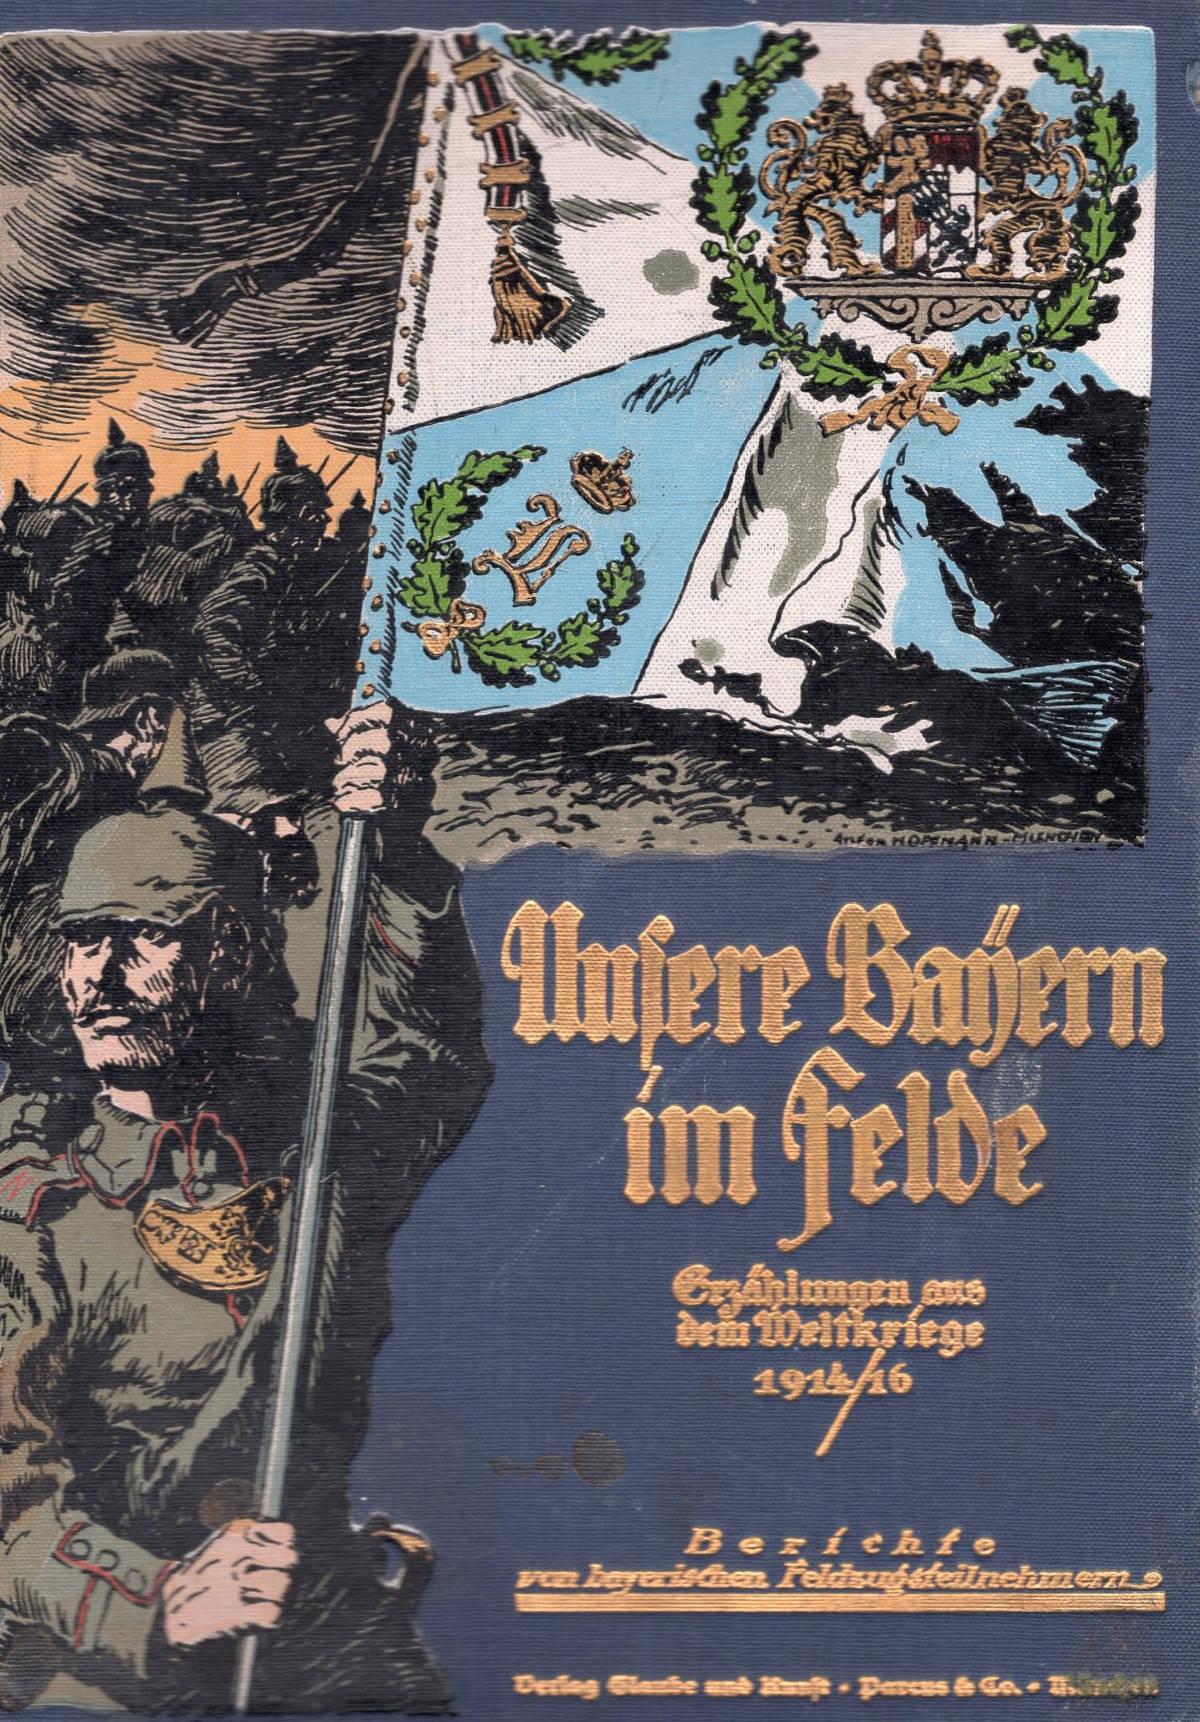 Jednym z ciekawszych nabytków Biblioteki MNZP w 2021 roku jest drugi tom wydawnictwa Unsere Bayern im Felde : Erzählungen aus dem Weltkriege 1914/16 : Berichte von bayerischen Feldzugsteilnehmern (Nasi Bawarczycy w polu: opowiadania z Wojny Światowej 1914/16: relacje bawarskich kombatantów, sygnatura 42044). Jak sam tytuł wskazuje, jest to antologia beletryzowanych relacji walczących w bawarskich jednostkach uczestników zmagań pierwszych dwóch lat Wielkiej Wojny. Zrozumiałe, że od wydawnictwa wydanego w apogeum wojny, nie można oczekiwać, iż będzie ono zawierać materiały o walorach naukowych; nie taki był jego cel – przede wszystkim miało ono krzepić wiarę w zwycięstwo i zachęcać do dalszych wyrzeczeń. Tym niemniej, także w tego rodzaju publikacjach można trafić na sporo interesujących szczegółów, przekazanych przez naocznych świadków krwawych zmagań. Dla czytelnika zainteresowanego historią Twierdzy Przemyśl szczególnie ciekawe mogą być relacje żołnierzy, którzy uczestniczyli w odbiciu twierdzy na przełomie maja i czerwca 1915 r. Bawarczycy walczyli w ramach dowodzonej przez gen. Paula v. Kneussla 11 bawarskiej Dywizji Piechoty, którą tworzyły m. in. 3 i 22 bawarski Pułk Piechoty, 13 rezerwowy bawarski Pułk Piechoty, 21 bawarski Pułk Artylerii Polowej, 19 i 21 bawarska Kompania Pionierów i trzy szwadrony jazdy. Dywizja wchodziła w skład Kombinowanego Korpusu gen. Kneussla, który był częścią niemieckiej 11 Armii gen. Augusta v. Mackensena1.  Prezentowana poniżej relacja Der Kampf um das Fort (Walka o fort) dotyczy wydarzeń związanych z walkami wokół fortu IX „Duńkowiczki”. Jest ona intweresująca także ze względu na jej autora – Colina Rossa.  Colin Ross (ur. 29 kwietnia 1885 r. w Wiedniu) był austriackim dziennikarzem, korespondentem wojennym i inżynierem. Studiował m. in. w Monachium i tam też odbył służbę wojskową w jednej z jednostek bawarskiej artylerii polowej. Przed wybuchem I wojny światowej był korspondentem wojennym na Bałkanach i w Meksyku. Zza oceanu do Europy wrócił w czasie kryzysu dyplomatycznego, który wybuchł po zamachu w Sarajewie na arcykcięcia Franciszka Ferdynanda i jego małżonkę 28 czerwca 1914 r. Przez Francję i Niemcy dotarł do Wiednia, skąd udał się do Monachium. Tam wstąpił – jako podporucznik rezerwy – do 7 bawarskiego Pułku Artylerii Polowej, z którym udał się na front zachodni.  Nie są znane szczegóły jego służby – 7 bawarski Pułk Artylerii Polowej nie wchodził w skład 11 bawarskiej Dywizji Piechoty. Relacja Der Kampf um das Fort pisana jest z punktu widzenia oficera artylerii, więc mogła to być jedna z baterii 21 bawarskiego Pułku Artylerii Polowej, ale też 5 bateria bawarskiego 2 Rezerwowego Pułku Artylerii Pieszej, również należąca do artylerii 11 dywizji. Sam Ross co prawda w 1916 r. spisał wspomnienia z pierwszych dwóch lat wojny (Wir draußen. Zwei Jahre Kriegserleben an vier Fronten ; Poza domem. Dwa lata przeżyć wojennych na czterech frontach), ale jak napisał we wstępie do nich, w tym czasie pełnił on służbę zarówno w piechocie jak i artylerii i niewiele o szczegółach w tym zakresie można z nich wyczytać, oprócz tego, że pierwsze pół roku wojny spędził we Francji, później, wraz z przygotwywaniem ofensywy w Galicji, trafił na front wschodni. W wydawanym w czasie wojny wydawnictwie „Illustrierte Geschichte des Weltkrieges” w 1915 r. ukazała się jego relacja ze szturmu na wzgórze Sękowa przeprowadzonego w czasie działań związanych z przełamaniem frontu pod Gorlicami na początku maja 1915 r. Został wówczas podpisany jako „adiutant w jednym z pułków artylerii polowej w armii gen. Mackensena w Galicji”2. W tym charakterze najprawdopodobniej walczył też pod Przemyślem na przełomie maja i czerwca 1915 r.  21 czerwca 1915 r. Ross (krótko po tym, jak awansowano go na porucznika) został ranny w czasie walk na Wołyniu. Leczenie było długie, w tym czasie zajmował się m.in. pracą nad Wir draußen. W kilku rozdziałach zawarł tu m.in. swe wspomnienia z walk o Przemyśl. Jeden z nich, zatytułowany Der Kampf im Fort XI (Walka w forcie XI), ma zasadniczo tę samą treść, jak prezentowana poniżej relacja3. Walk o Przemyśl dotyczył też jego tekst Wie wir Przemysl nahmen (Jak zajęliśmy Przemyśl), który ukazał się w 1916 r. w trzecim tomie wydawnictwa “Illustrierte Geschichte des Weltkrieges 1914/15”4.  Po rekonwalescencji nie wrócił do służby, ale rozpoczął pracę w Militärische Stelle des Auswärtigen Amtes, oddziale w niemieckiego Ministerstwa Spraw Zagranicznych zajmującego się m. in. propagandą.  W okresie międzywojennym zyskał rangę jednego z najważniejszych i najpopularniejszych reportażystów i pisarzy podróżniczych niemieckiego obszaru językowego. Był też jednym z pionierów reportażu filmowego. Po 1933 r. otwarcie deklarował swe narodowo-socjalistyczne sympatie, aczkolwiek dystansował się od antysemityzmu. W obliczu załamania się III Rzeszy, obawiając dostania się w ręce aliantów, 29 kwietnia 1945 r. popełnił wraz z małżonką samobójstwo w domu swego przyjaciela, Baldura von Schiracha, w Urfeld am Walchensee5.  Przypadająca na przełom maja i czerwca kolejna rocznica walk o odbicie Twierdzy Przemyśl przez państwa centralne, stanowi znakomitą okazję do przedstawienia relacji ppor. Colina Rossa z walk w okolicy fortu XI „Duńkowiczki”.  „Po przełamaniu linii umocnień fort XI miał zostać zajęty od wewnętrznej strony; ciężka artyleria wykonała tutaj solidną robotę. Potężne betonowe bloki rzucone siłą wybuchu leżą na dziedzińcu fortu, pomiędzy nimi zwłoki, które przysypane cementowym pyłem, są białe niczym mąka. Wejścia do wnętrza dzieła wydają się prowadzić do labiryntu pełnego przepaści.  MPF-130 Fort XI DuńkowiczkiZ dziedzińca bez trudu przechodzi się do fosy. Przed nią, szerokie na wiele metrów zasieki, są nadal prawie nietknięte; po przedarciu się przez nie atakujący musieliby jeszcze pokonać fosę. Jej dno zabezpieczone jest przeszkodami z drutu i minami. Następnie pojawia się pionowa ściana, a po niej stroma pochyłość z kolejnymi zasiekami. Fosa może być ostrzeliwana wzdłuż z kojców.  Zostały one trafione pociskami ciężkiej artylerii. Mury się zawaliły, ścieżka wśród gruzów i kamieni prowadzi dalej. W ścianie jest szczelina, zasieki za nią są zniszczone. W pewnym momencie droga w górę nasypu za ścianą jest wolna. Dwa wewnętrzne dziedzińce są w połowie zasypane6. Masy ziemi z nasypów, które wznosiły się za nimi, osunęły się. Wygląda to jak górskie rumowisko. Stanowiska karabinowe na na baterii w wielu miejscach pękały, na betonowych ścianach widać szczeliny i rysy, prowadzące do stanowisk żelazne schody zostały zerwane i wyrzucone na dziedziniec.  Stanowisko baterii na górnym wale jest puste, strzelające z odkrytych pozycji działa byłyby łatwym celem dla artylerii szturmowej. Jednak na obu skrzydłach wału znajdują się działa osadzone w masywnych, opancerzonych betonowych tradytorach.  Oba zostały uszkodzone przez bezpośrednie trafienia. Południowo-wschodni7 jest całkowicie zniszczony. To, co kiedyś było solidną konstrukcją ze zbrojonej stali i twardego jak skała betonu, która zdawała się być zbudowaną na wieczność, jest teraz kupą gruzu i żelastwa. Wygląda jak krater otoczony skalistymi górami, którym kształt nadają ogromne, popękane bloki cementu. Wystają zeń pogięte żelazne szyny i stalowe płyty. Zniszczone działa są całkiem zasypane.  Tradytor w północno-zachodniej części fortu nie został tak poważnie uszkodzony8. Z zewnątrz przez wąskie szczeliny nadal widać wyloty luf dział. Tylko jedna ściana boczna została uderzona i wyłamana. Jest wystarczająco dużo miejsca między postrzępionymi blokami a wygiętym żelazem, aby można było wczołgać się do stanowisk dział. Panuje tu półmrok. Oko powoli przyzwyczaja się do ciemności i można rozpoznać, że sufit częściowo się zawalił. Mocne dźwigary i 1,5-metrowe betonowe sklepienie są rozerwane jak gdyby zbudowano je z brzozy i luźniej ziemi. Działo w lawecie stoi nienaruszone za pancerzem. Jednak jego obsługa ucierpiała. Jeden kanonier leży roztrzaskany pod ciężkimi żelaznymi drzwiami prowadzącymi do sąsiedniego pomieszczenia. Ciśnienie powietrza mogło wyrwać je z zawiasów i rzucić na niego. Drugi został zmiażdżony przez spadający kamienny blok. Sąsiednia kazamata jest całkowicie nienaruszona. Działo, które wypełnia większość pomieszczenia, pobłyskuje w bladym świetle. Wszystkie jego mechanizmy funkcjonują. To jedno, nienaruszone działo, pomimo wszystkich zniszczeń spowodowanych morderczym ostrzałem, uczyniłoby fort warownią nie do zdobycia, gdyby nie to, że po bezpośrednim trafieniu w sąsiednie pomieszczenie, pozostała przy życiu reszta załogi nie uciekła w panice.  MPF-1865 Zniszczony fort XI DuńkowiczkiZa działem żelazne schody prowadzą stromo w górę na stanowisko obserwacyjne oficera kierującego ogniem. Pod lekko spłaszczoną, łukowatą pancerną kopułą, jest miejsce tylko dla jednego człowieka. Wąska szczelina pozwala obserwować okolicę. Kopułę, do której przymocowany jest pierścień z podziałką, można lekko obracać we wszystkich kierunkach za pomocą pokrętła. Słońce nagrzewa stalowy sufit. W niskim, dusznym pomieszczeniu jest nieznośnie wilgotno i nieprzyjemnie.  Działa w kojcach również są nieuszkodzone, podobnie jak jedna z wież pancernych.  W betonowym przejściu między dwoma wewnętrznymi dziedzińcami znajduje się cenna, ale budząca grozę pamiątka po ostrzale: niewypał z 42-centymetrowego moździerza. Pocisk przebił się przez nasyp i betonowy strop, po czym utknął w sklepieniu nie eksplodowawszy. Wisi nad naszymi głowami, groźnie i niesamowicie. Pocisk wystaje z sufitu na jedną trzecią swojej długości, wciśnięty między mocne żelazne dźwigary, wygięte jak wosk9.  Pocisk przebił beton i stal, a jego czubek wystaje z sufitu nieuszkodzony, nienaruszony, jakby właśnie wyszedł z fabryki; na jego spiczastym czubku nie widać odprysków ani otarć! Siła uderzenia spowodowała tylko pęknięcia i szczeliny w ścianach oraz nieznacznie wypchnęła fragmenty ściany w niektórych miejscach.  Liczne pomieszczenia i kazamaty w forcie zachowały się w stanie nienaruszonym, odnaleziono też stosunkowo niewielką liczbę zabitych. W większości pomieszczeń widoczne są jednak znaczne pęknięcia i szczeliny, które powstały, gdy w pobliżu uderzyły ciężkie pociski. Przeżycie ostrzału fortu przez nowoczesne działa najcięższych kalibrów musi być niemożliwym do wyobrażenia, przerażającym doświadczeniem.  Załoga fortu XI dzielnie przetrwała pierwsze 24 godziny. Tak, nawet potem strzelali do nas z nieuszkodzonych dział. W pokoju komendanta znaleźliśmy kawałek korpusu i zapalnik 42-centymetrowego granatu, który załoga musiała przytaszczyć dla swojego dowódcy jako cenną pamiątkę. Wytrzymali zatem pierwszą dobę. Ale kiedy zaczęło się drugie bombardowanie, każdy mógł obliczyć, ile czasu zajmie, nim wyciągnie śmiertelny los – wówczas wszystkich zawiodły nerwy. To doprowadziło do tego, że nasza piechota mogła zająć fort bez walki. Wówczas znajdowało się w nim około 20 ludzi, którzy bez oporu dali wziąć się do niewoli. W innym forcie załoga wyszła naprzeciw atakujących z podniesionymi rękami, drżąc i żegnając się; wielu spośród nich było albo głuchych, albo bliskich obłędu. Rosyjscy oficerowie wciskali niemieckim dowódcom pieniądze, zegarki i papierośnice, jąkając się błagali o litość. W tym samym czasie jednak Rosjanie rzucili do twierdzy świeże wojska z garnizonu lwowskiego, które utrudniały nam walkę o rozpoczynające się pozycje pośrednie i zadały nam ciężkie straty.  Fort XI znajduje się na lewym skrzydle linii przełamania10. Fort XII nadal znajduje się w rękach Rosjan, co więcej, nadal znajdują się oni niedaleko nas w szańcu11 między obydwoma fortami. Bezpośrednio na naszej lewej flance, na równinie po obu stronach szosy z Przemyśla do Radymna znajdują się też jeszcze znaczniejsze siły przeciwnika. Także znajdujące się na prawo od nas forty koło Mokrej12, które nie zostały jeszcze zdobyte, mogą również ostrzeliwać naszą flankę i tyły. Zaś przed nami stoi twardy nieprzyjaciel, który z całych sił próbuje odzyskać naszą zdobycz. Sytuacja, w której znaleźli się atakujący, nie jest zatem przyjemna. Ale są oni jak buldogi, które wgryzione w przeciwnika raczej dadzą się rozerwać, niż wypuszczą pochwycony kęs.  MPF-1868 Zniszczony fort XI Duńkowiczki1 czerwca, pod osłoną mglistego poranka zostały podciągnięte baterie. Ulokowano je w zagłębieniu na północ od fortu, gdzie z trzech stron są zakryte i mogą strzelać także w trzy strony; wróg jest z przodu, z prawa i z lewa.  Dla nas, artylerzystów, sam fort jest cenny przede wszystkim jako punkt obserwacyjny. Widok stąd rozciąga się na kilometry. Jednak Rosjanie też o tym wiedzą i należy się spodziewać, że wezmą nas pod silny ogień. Ale wstaliśmy wcześnie – o pierwszej wyruszyliśmy z wzgórza Na Górach13 – i dobrze wykorzystujemy czas, który mamy. Pomiędzy betonowym gruzem i żelastwem baterii w pośpiechu budowane są prowizoryczne zakryte pozycje.  Zachowane wieże pancerne są niestety bezużyteczne, ponieważ nie dają skierować się na południe. Gdy nasza piechota zbliża się do drogi prowadzącej do Radymna, by zabezpieczyć nas na flance, rosyjskie baterie ostrzeliwują fort. Być może byliśmy nieostrożni. Ciężka bateria strzela z południowego zachodu, lekka z południowego wschodu. Dzięki Bogu, ta ciężka strzela za daleko. Jej granaty przelatują nad naszymi głowami i wszystkie trafiają za fort, najwyżej jeden eksplodował w fosie. Ale lekka strzela dobrze. Zasypuje szrapnelami i odłamkami granatów odkryte miejsca wokół nas. Nic dziwnego, że jej ogień jest celny – Rosjanie znają przecież odległość.  Właśnie nadlatuje kolejna salwa. Czterokrotny huk i oślepiające światło wybuchu. Grad żelaza krótko i mocno uderza w ziemię. Sfffff, bang – śpiewny ton zanika wibrującym echem - i pfitt, pfitt, pfitt. Dowódca baterii spokojnie pozostaje przy swojej lornetce nożycowej. Rosjanom nie uda się nas stąd wykurzyć. Ale nie rezygnują tak łatwo – znów podnoszą się fontanny ziemi z wybuchów pocisków dużego kalibru i znowu świszczy nad naszymi głowami. Sffff – plump, to było cholernie nisko nad nad moją głową. Odwracam się, niecałe pięć kroków za mną pocisk uderzył w ziemię, nie wybuchając. Ilu ludziom niewypały uratowały życie przed niechybną śmiercią i jak straszne byłyby straty, gdyby nie wybrakowana amunicja artyleryjska.  Nasz oddział nadal ostrzeliwuje okopy na naszej flance, których Rosjanie nie chcą opuścić mimo ciężkiego ostrzału. Ale nic im to nie da. Z północy zaczynają się teraz działania sąsiedniego korpusu14. Rosjanie byli na naszej flance znacznie dalej na północ, niż myśleliśmy. Dopiero gdy zobaczyliśmy ich wypadających z okopów i biegnących na południe, zdaliśmy sobie sprawę z niebezpieczeństwa, jakie na nas czyhało. Ogień ciężkich moździerzy wygnał ich z okopów. Uciekający porywają za sobą linię wsparcia i rezerwy. Tłum biegnie i biegnie po otwartym polu na odkrytej równinie. Rejterada przemieszcza się na południe stosunkowo wąską drogą. Po lewej stronie nasza piechota przy głównej drodze, po prawej biegnący z południa na północ nasyp kolejowy linii kolejowej do Jarosławia. Pomiędzy nimi bezładnie miotają się masy uciekających Rosjan. Niemiecka artyleria wciąż depcze im po piętach, podczas gdy piechota powoli posuwa się pod osłoną jej ognia.  Teraz dla nas nadszedł moment ataku. Nasze baterie flankują Rosjan. Ściana eksplodujących odłamków uniemożliwia im ucieczkę na południe. W bezbrzeżnym przerażeniu gromadzą się i zawracają. Próbują przebić się w lewo – tam wita ich ostrzał piechoty. Na wschodzie próbują schronić się za nasypem kolejowym lub skryć w przejazdach pod torami.  To żałosny obraz, ta pędząca we wszystkich kierunkach ludzka masa, która nie ma dokąd uciec. Teraz Rosjanie pokazują białe flagi i desperacko machając nimi biegną w kierunku powoli posuwających się niemieckich linii strzeleckich.  Na tym odcinku frontu bitwa dobiegła końca. Ale najtrudniejsze wciąż przed nami. Na południu i południowym wschodzie Rosjanie wciąż siedzą tuż przed naszym nosem. Najbliższy mały fort w pasie umocnień, który ze względu na swoją płaską, okrągłą konstrukcję przypomina żółwia, jest w naszym posiadaniu15. Rosjanie strzelają do niego z ciężkiej artylerii, zaś piechurzy gorączkowo okopują się na jego stoku, by znaleźć schronienie. Okopy prowadzące wówczas do szańca nadal znajdują się w rękach Rosjan i samo dzieło jest przez nich silnie obsadzone. Gorsze dla nas są jednak fortyfikacje na północy Żurawicy, gdzie znajduje się cały system okopów flankujących atak na szaniec. Rosjanie są mniej niż 500 metrów od nas, a ich kule świszczą wokół naszych punktów obserwacyjnych.  Walka toczy się nadal bez roztrzygnięcia. W porze obiadowej żołnierze nieco odpoczywają. Także nam odpoczynek się należy. Krótki sen i ciężka praca w palącym galicyjskim słońcu dają się w końcu we znaki. W kazamacie panuje przyjemny chłodek, nawet jeśli, jak na całym forcie, jest tu pełno kurzu i brudu. Posilamy się przysiadając na skrzyniach z amunicją.     Przez całe popołudnie ataki nie przynoszą żadnych rezultatów. Pomimo gradu granatów, pod którym nasze baterie utrzymują flankujące pozycje Rosjan, grupy szturmowe przy każdym nowym natarciu natrafiają na gwałtowny ogień, który ponownie je odrzuca.  Wieczór już niedaleko, przygotowywany jest nowy atak. Pomagają nam teraz moździerze; niedaleko od nas umieszczone jest ich stanowisko obserwacyjne. Piechota ponownie naciera. Opuszczone okopy w jakiś sposób jej pomagają. Ale jest też dużo odkrytego terenu. Tuż przed nami oddziały wsparcia biegną do następnego rowu, około 100 kroków przez otwarte pole. Wściekły, szybki ogień grzechocze z rosyjskich umocnień. Nasze granaty wybuchają bezpośrednio nad okopami wroga, między nimi wznoszą się fontanny wybuchających pocisków moździerzy, ogień nie słabnie; salwy przelatują nad naszymi głowami. Osłonięci piechurzy biegną tak szybko jak tylko mogą, tak szybko, jak pozwalają na to tornister i ciężki sprzęt. Każdy myśli o chwili wytchnienia, która nastąpi po wskoczeniu do bezpiecznego, chroniącego przed ostrzałem okopu.  To przerażający, ściskający serce widok, gdy nasi ludzie muszą przedrzeć się przez szalejący, rosyjski ogień, niczym ruchome cele na strzelnicy. Ale jak dotąd wszyscy przychodzą go szczęśliwie. Nagle upada pierwszy, jakby rażony ciosem pałki. Jego towarzysze pędzą obok niego dalej.  Cały pluton wsparcia minął, tylko ofiara leży nieszczęśliwa i porzucona na otwartej przestrzeni, na linii ognia piechoty wroga. Prowadzenie ognia nie pozostawia czasu na obserwowanie go, ale jakby przyciągany siłą wzrok w każdej wolnej sekundzie kieruje się na niego. Ma postrzał głowy, jego twarz i głowa barwią się purpurą i czerwienią. Mimo to wciąż żyje. Porusza się, podnosi głowę i podejmuje daremne, desperackie próby czołgania się do przodu. Trudno na to patrzeć. Młody oficer artylerii dwukrotnie prosi swojego przełożonego o pozwolenie na wyprowadzenie rannego z ognia i dwukrotnie nie otrzymuje pozwolenia.  Teraz z okopu wyczołguje się jeden z jego towarzyszy. Mocno przywarty do ziemi pełznie w jego kierunku. Kule świszczą mocniej niż dotąd. Ostrożnie spycha rannego w zagłębienie terenu, gdzie przynajmniej w pewnym stopniu są chronieni. Leżąc bandażuje go. Potem próbuje przeciągnąć ciężkie, bezradne ciało do bezpiecznego okopu. Z pomocą przychodzi mu drugi. Westchnienie ulgi, dzięki Bogu, teraz są w okopie. Teraz nasza czujność jest potrzebna bardziej niż kiedykolwiek, ponieważ nasi prą do przodu z niesamowitą wytrwałością. To walka o każdą piędź ziemi. Rosjanie biegną z powrotem okopami do szańca. Szybka salwa na dzieło. Nasi ludzie podążają od „żółwia” ramię przy ramieniu.  Fontanny wybuchających pocisków moździerza wznoszą się w chmurach żółtego i czarnego dymu. Białych jak baranki obłoczki pękających szrapneli przesuwają się po niebie. Ogień z rosyjskich pozycji flankujących nie słabnie. Coraz częściej ostrzeliwują nasze stanowisko obserwacyjne. Sfff, pfft, pfft – jeden z telefonistów raniony w czoło padł bezgłośnie na ziemię. Rosyjska bateria znowu odpala. Żelazny grad świszcze między nami. Silny cios w ciało. Kula odbiła się od rękojeści pistoletu; tylko kabura jest przedziurawiona. Kto by teraz zwracał na to uwagę. Wśród świszczących kul rozgorączkowani wojownicy wszystkie niebezpieczeństwa zbywają śmiechem.  Nasza artyleria nie jest silna, ale nasze dwie baterie strzelają ile mogą. Piechota posuwa się naprzód, ogień wroga słabnie, a zapadający wieczór przynosi dobre wieści – szaniec został zajęty.  Dzień walki dobiegł końca. Na zajmowanej pozycji okopuje się piechota; gdy tylko się ściemni, świeże oddziały zluzują wyczerpanych walką. Schodzimy z pozycji obserwacyjnej do fortu. W wieczornym świetle niesamowicie rysują się w głębi częściowo rozbitego dziedzińca zarysy baterii pancernej i jej strzaskanych wież. Stopa ślizga się po luźnej ziemi. Z wejścia do fortu świeci ciemnoczerwone światło.  Tlące się ognie i słabo migoczące świece wypełniają kazamaty i korytarze mistycznym półmrokiem. Widmowe cienie wznoszą się i opadają, rosną do gigantycznych rozmiarów i rozpraszają się.  Wokół dymiących ognisk i migoczących ogarków świec obozują żołnierze. Hełmy nadają ich sylwetkom wojownicze, ostre cienie, które rzucone na ściany w skaczącym w górę i w dół świetle sprawiają, że rysy i pęknięcia zdają się poruszać. Mundury ludzi są podarte i brudne, włosy i ubrania zawszone; jakie to ma znaczenie – Rosjanie cały fort zostawili pełen robactwa. Twarze z dzikimi brodami lub kolczastym zarostem, dłonie zesztywniałe od brudu – kto miał czas się myć w ciągu ostatnich kilku dni? – nawet oficerowie nie.  Studnia w forcie jest zniszczona; wodę z niej czerpie się wiaderkami spuszczonymi na linach, ale jest to mętna, śmierdząca gnojówka. Brudne, przepocone ubrania przyklejają się do ciała, stopy są obolałe. W maleńkiej dziurze, być może w dawnym areszcie, który właśnie zapewnił nam miejsce dla nas trzech, kucamy na pryczy i przy kapiących świecach jemy słabo podgrzane jedzenie.  W kazamatach leżą na pryczach ciasno upakowane rezerwy. Szyby wentylacyjne są częściowo zasypane, powietrze jest zużyte i śmierdzące; zapach przepoconego stłoczonego tłumu jest wszechobecny. Dowódca oddziału zadomowił się w kazamacie komendanta. Gruz jest jako tako uprzątnięty, jest łóżko, stół i para krzeseł. Oddział telefoniczny znajduje się w przedpokoju16; buczenie, dzwonki i krzyki słychać bez przerwy. Druty ciągnięte pod sufitem gęstą pajęczyną, drżącą niesamowicie w chybotliwym świetle. Upiorne błyski z korytarza. Stopa potyka się o zwłoki. Nie było czasu, aby wszystkich pochować. Ciasno stłoczona grupa kucających jeńców rosyjskich; obok nich blado połyskuje bagnet strażnika.  Ranni są ciągle wnoszeni na noszach i płachtach namiotowych. Ciche, przepojone bólem jęki. Obok przechodzi oficer z całkowicie zabandażowaną głową.  W jednej z kazamat stłoczeni są ranni Rosjanie. Kucają prawie jeden na drugim. Prowizoryczne bandaże są zakrwawione, także mundury zakrzepła krew barwi rdzawym kolorem. Pomieszczenie wypełnia bolesny jęk. Co jakiś czas ktoś głośno wzywa pomocy. Lekarz, który nie może przedrzeć się przez ten bezmiar nieszczęścia, stoi w wejściu. Stara się dać znakami do zrozumienia rannemu, że przestrzeloną dłoń powinien trzymać w górze.  Przed kazamatą, w której leżą wzięci do niewoli rosyjscy oficerowie, wystawiono podwójną wartę. Brakuje drzwi. Zamiast nich stoją dwaj strażnicy. Płomień ostatniej świecy, której światło odbijało się w bagnetach, gaśnie. Wartownicy stoją nieruchomo, nie potrzebują światła, aby strzec jeńców. Nie można ich zobaczyć, ale można wyczuć, że stoi tu dwóch mężczyzn z bronią gotową do strzału.  Z sufitu pośrodku fortu wciąż zagraża tkwiący w nim niewybuch. Śmierć, zniszczenie i gnicie wypływają z pęknięć i spoin, z rumowisk i czeluści korytarzy. Spośród mężczyzn, którzy tu śpią, żaden nie obawia się piekła, w które mogłoby zmienić się ich schronienie. Śmierć przykucnęła obok, a zgroza się do nich uśmiecha. Ale oni tego nie zauważają. Niezachwianie i silnie maszerują przez potworności”.  Przełożył i opracował Tomasz Pomykacz  Fotografie fortu XI „Duńkowiczki”, przedstawiające jego stan po odbiciu Twierdzy Przemyśl, pochodzą ze zbiorów Muzeum Narodowego Ziemi Przemyskiej (nry inw.: MPF-130, MPF-1865, MPF-1868).     Przypisy:  Histories of Two Hundred and Fifty-One Divisions of the German Army Which Participated in the War (1914-1918): Compiled From Records of Intelligence Section of the General Staff, American Expeditionary Forces, at General Headquarters, Washington 1920, s. 206, 208; Der Welt Krieg 1914-1918. Die militärischen Operationen zu Lande, 7. Bd., Die Operationen des Jahres 1915, [1], Die Ereignisse im Winter und Frühjahr, Berlin 1931, s. 469. Illustrierte Geschichte des Weltkrieges 1914/15, 2. Bd, Stuttgart etc. 1915, s. 457. C. Ross, Wir draußen. Zwei Jahre Kriegserleben an vier Fronten, Berlin-Wien 1916, s. 237-250. Illustrierte Geschichte des Weltkrieges 1914/15, 3. Bd, Stuttgart etc. 1916, s. 36. Collin Ross https://de.wikipedia.org/wiki/Colin_Ross#cite_note-Schulze-3 (dostęp 19 maja 2021); About Colin Ross https://www.colinrossproject.net/aboutcolinross/ (dostęp 19 maja 2021). Bodo-Michael Baumunk, Colin Ross. Ein deutscher Revolutionär und Reisender 1885-1945, Berlin 1999 mit Korrekturen 2015, https://www.colinrossproject.net/fileadmin/user_upload/baumunk_colin-ross_online2015.pdf (dostęp 19 maja 2021). Mowa o dziedzińcach między górnym a dolnym wałem fortu, zob. plan fortu w: T. Idzikowski, Fort XI „Duńkowiczki”, Przemyśl 2006, s. 47. Położony na prawym krańcu stropu koszar. Plan tradytora w: T. Idzikowski, Fort XI „Duńkowiczki”, Przemyśl 2006, s. 56. Zob. zdjęcia w: T. Idzikowski, op. cit., s. 72-73. Gen. Kneussl, jako miejsce przełamania pozycji rosyjskich wybrał odcinek pierścienia między fortami X i XI, zob. Der Welt Krieg 1914-1918. Die militärischen Operationen zu Lande, 7. Bd., Die Operationen des Jahres 1915, [1], Die Ereignisse im Westen im Frühjahr und Sommer, im Osten vom Frühjahr bis zum Jahresschluß, Berlin 1929, s. 178. Szaniec „Duńkowiczki” (Sch Dunkowiczki), wcześniej – Bateria 9 Małkowice. Forty na zachód od fortu X „Orzechowce”. Na Special-Übersichts-Plan von Przemyśl, Blatt 12, Żurawica, Wien 1897, WH [Wirtshaus – gospoda, karczma] Mokra zaznaczona jest przy drodze pomiędzy fortami forty Xa „Pruchnicka Droga” i X „Orzechowce”. Fort Xa zdobyty został zdobyty 31 maja, zaś X 2 czerwca. Forty IX „Ujkowice” i IXa „Przy Krzyżu” zostały opuszczone przez Rosjan 3 czerwca. Wzgórze ok 2 km na północ od fortu XI „Duńkowiczki”. Niemiecki XLI Korpus Rezerwowy, wchodzący w skład 11 Armii. Prawdopodobnie chodzi o fort XIb „Gaj”. Położony był on na południe od wsi Duńkowiczki, na południowy wschód od fortu XI „Duńkowiczki”. Zaczęto go (przynajmniej częściowo, wznosząc schrony) budować w okresie wyposażania Twierdzy Przemyśl zimą 1912/13 r. Zarys fortu dostrzegalny (pierwsze dzieło na lewo od drogi Przemyśl-Radymno) na często publikowanym w literaturze zdjęciu lotniczym północnego odcinka Twierdzy Przemyśl, zob. T. Idzikowski, Twierdza Przemyśl: powstanie, rozwój, technologie, Krosno 2014, s. 212, mapa na s. 218, zdjęcie na s. 234. Zob. plan fortu w: T. Idzikowski, Fort XI…, s. 38.